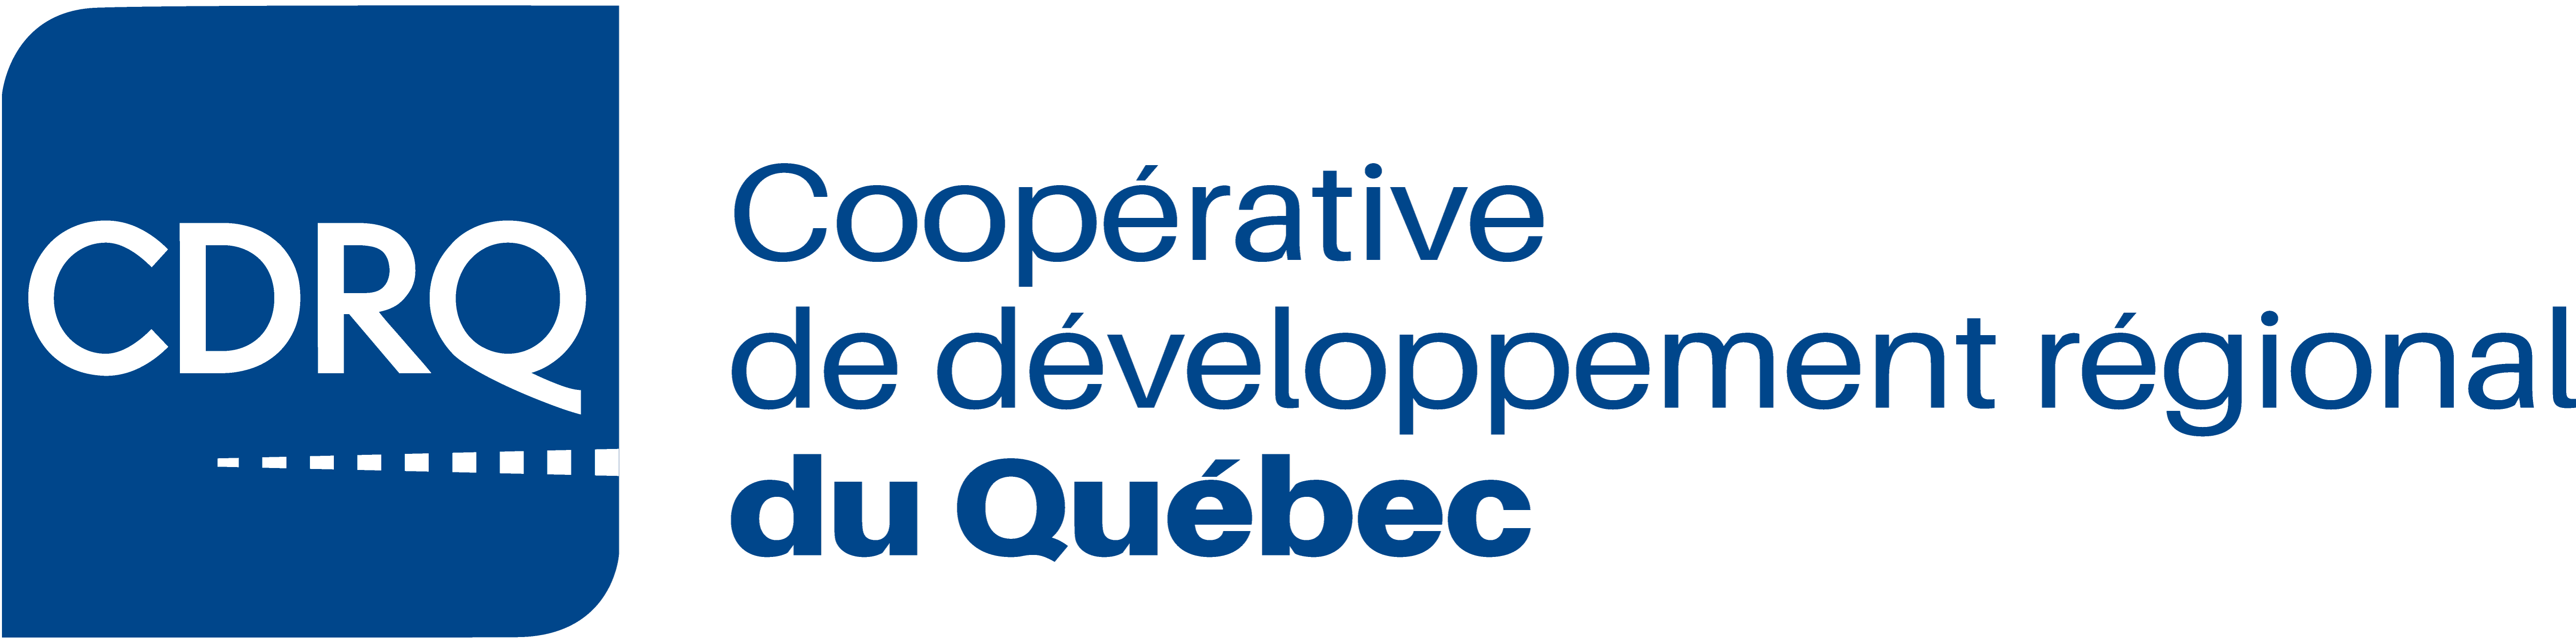 Coopérative de développement régional du Québec